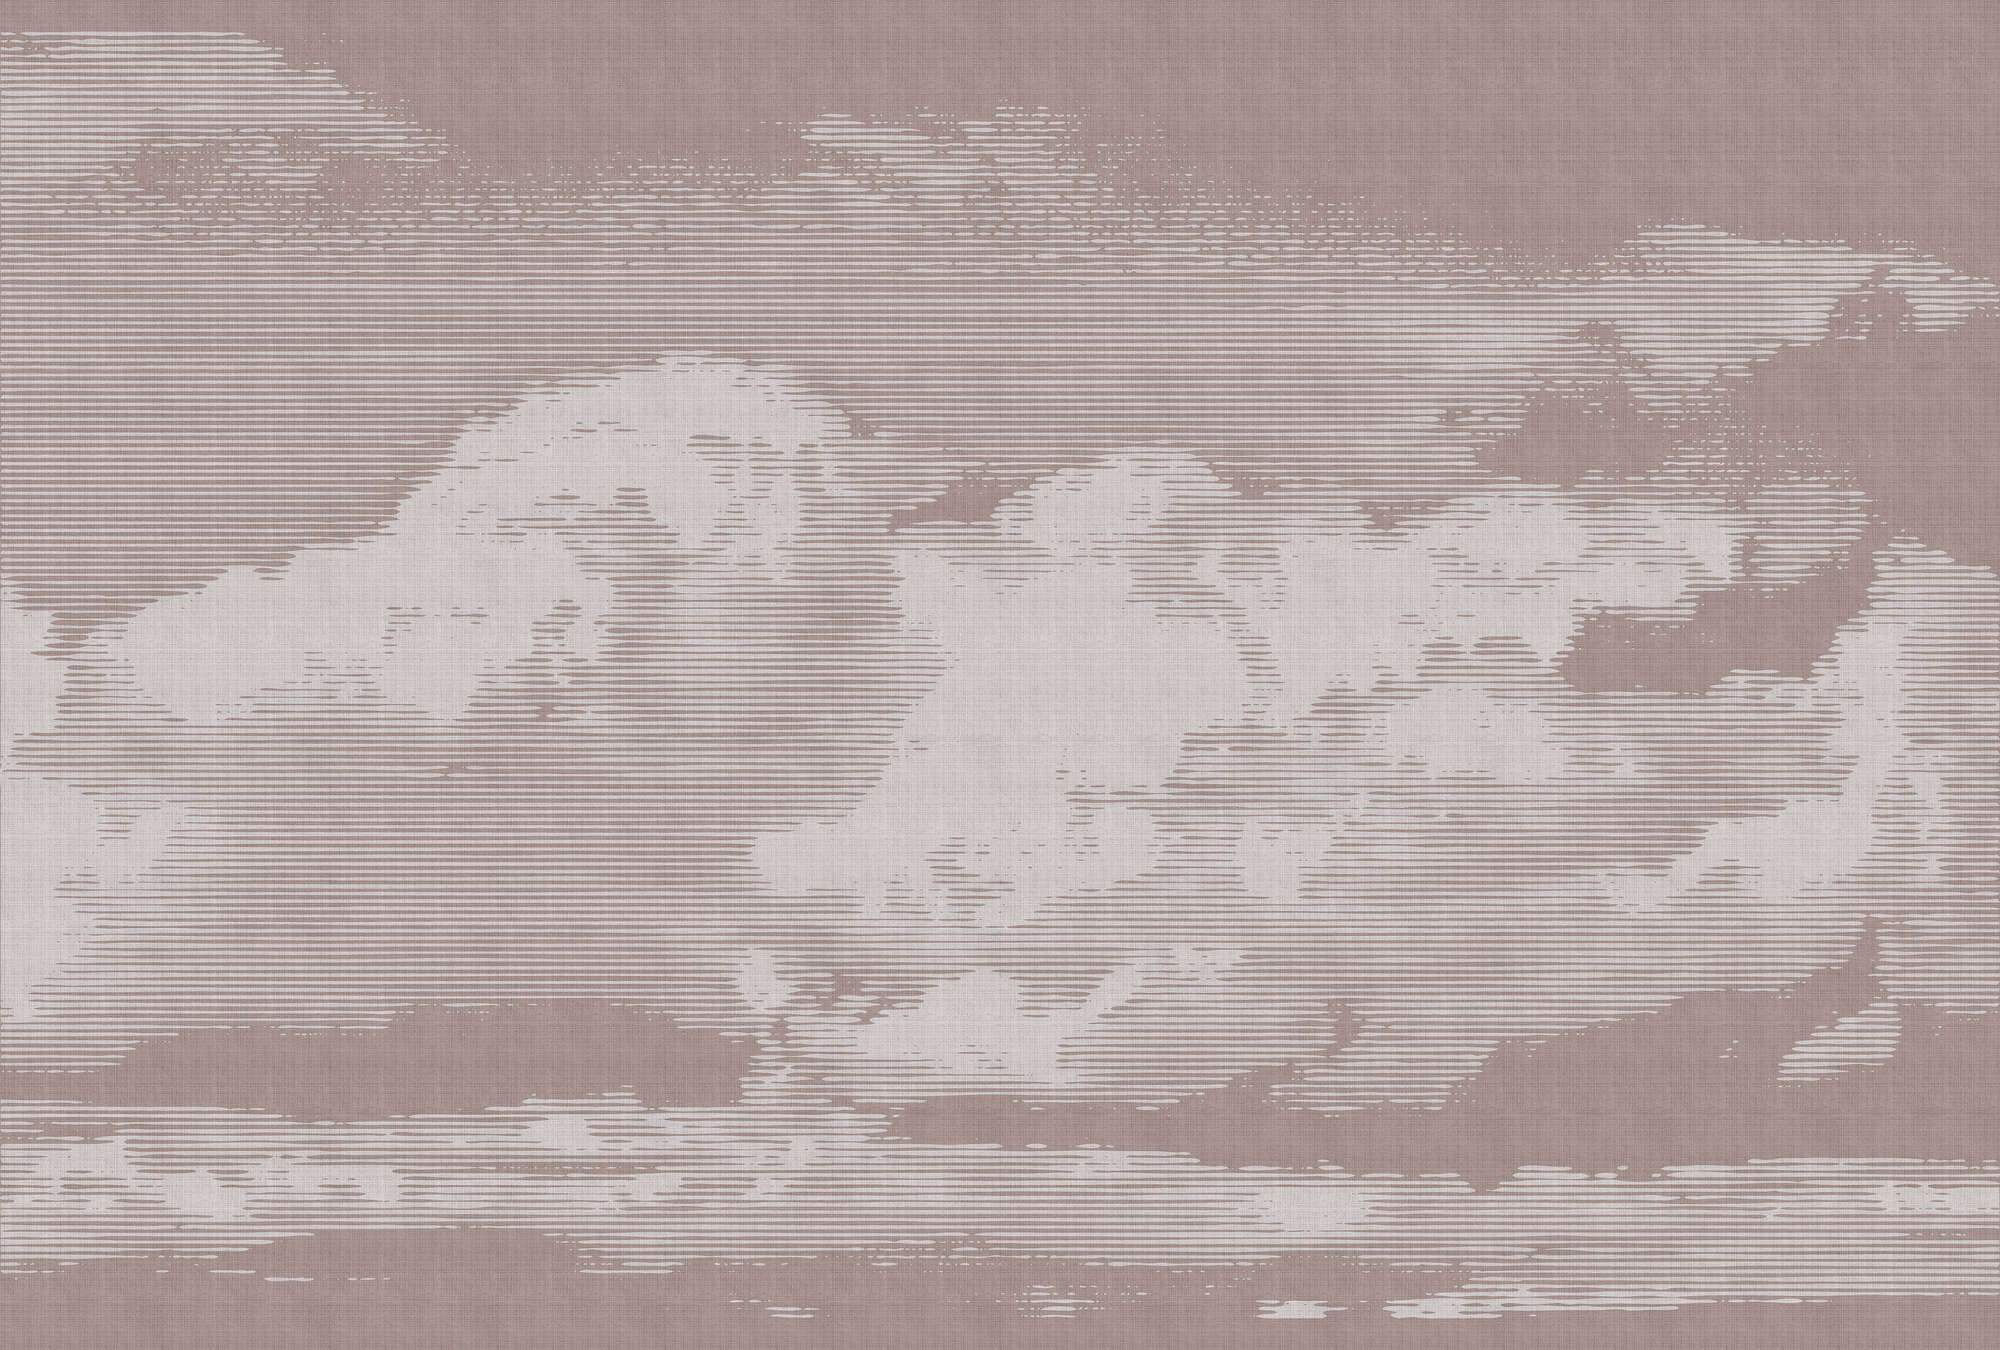             Clouds 3 - Carta da parati con motivo a nuvole - Natura qualita consistenza in lino naturale - Grigio, rosa | Vello liscio premium
        